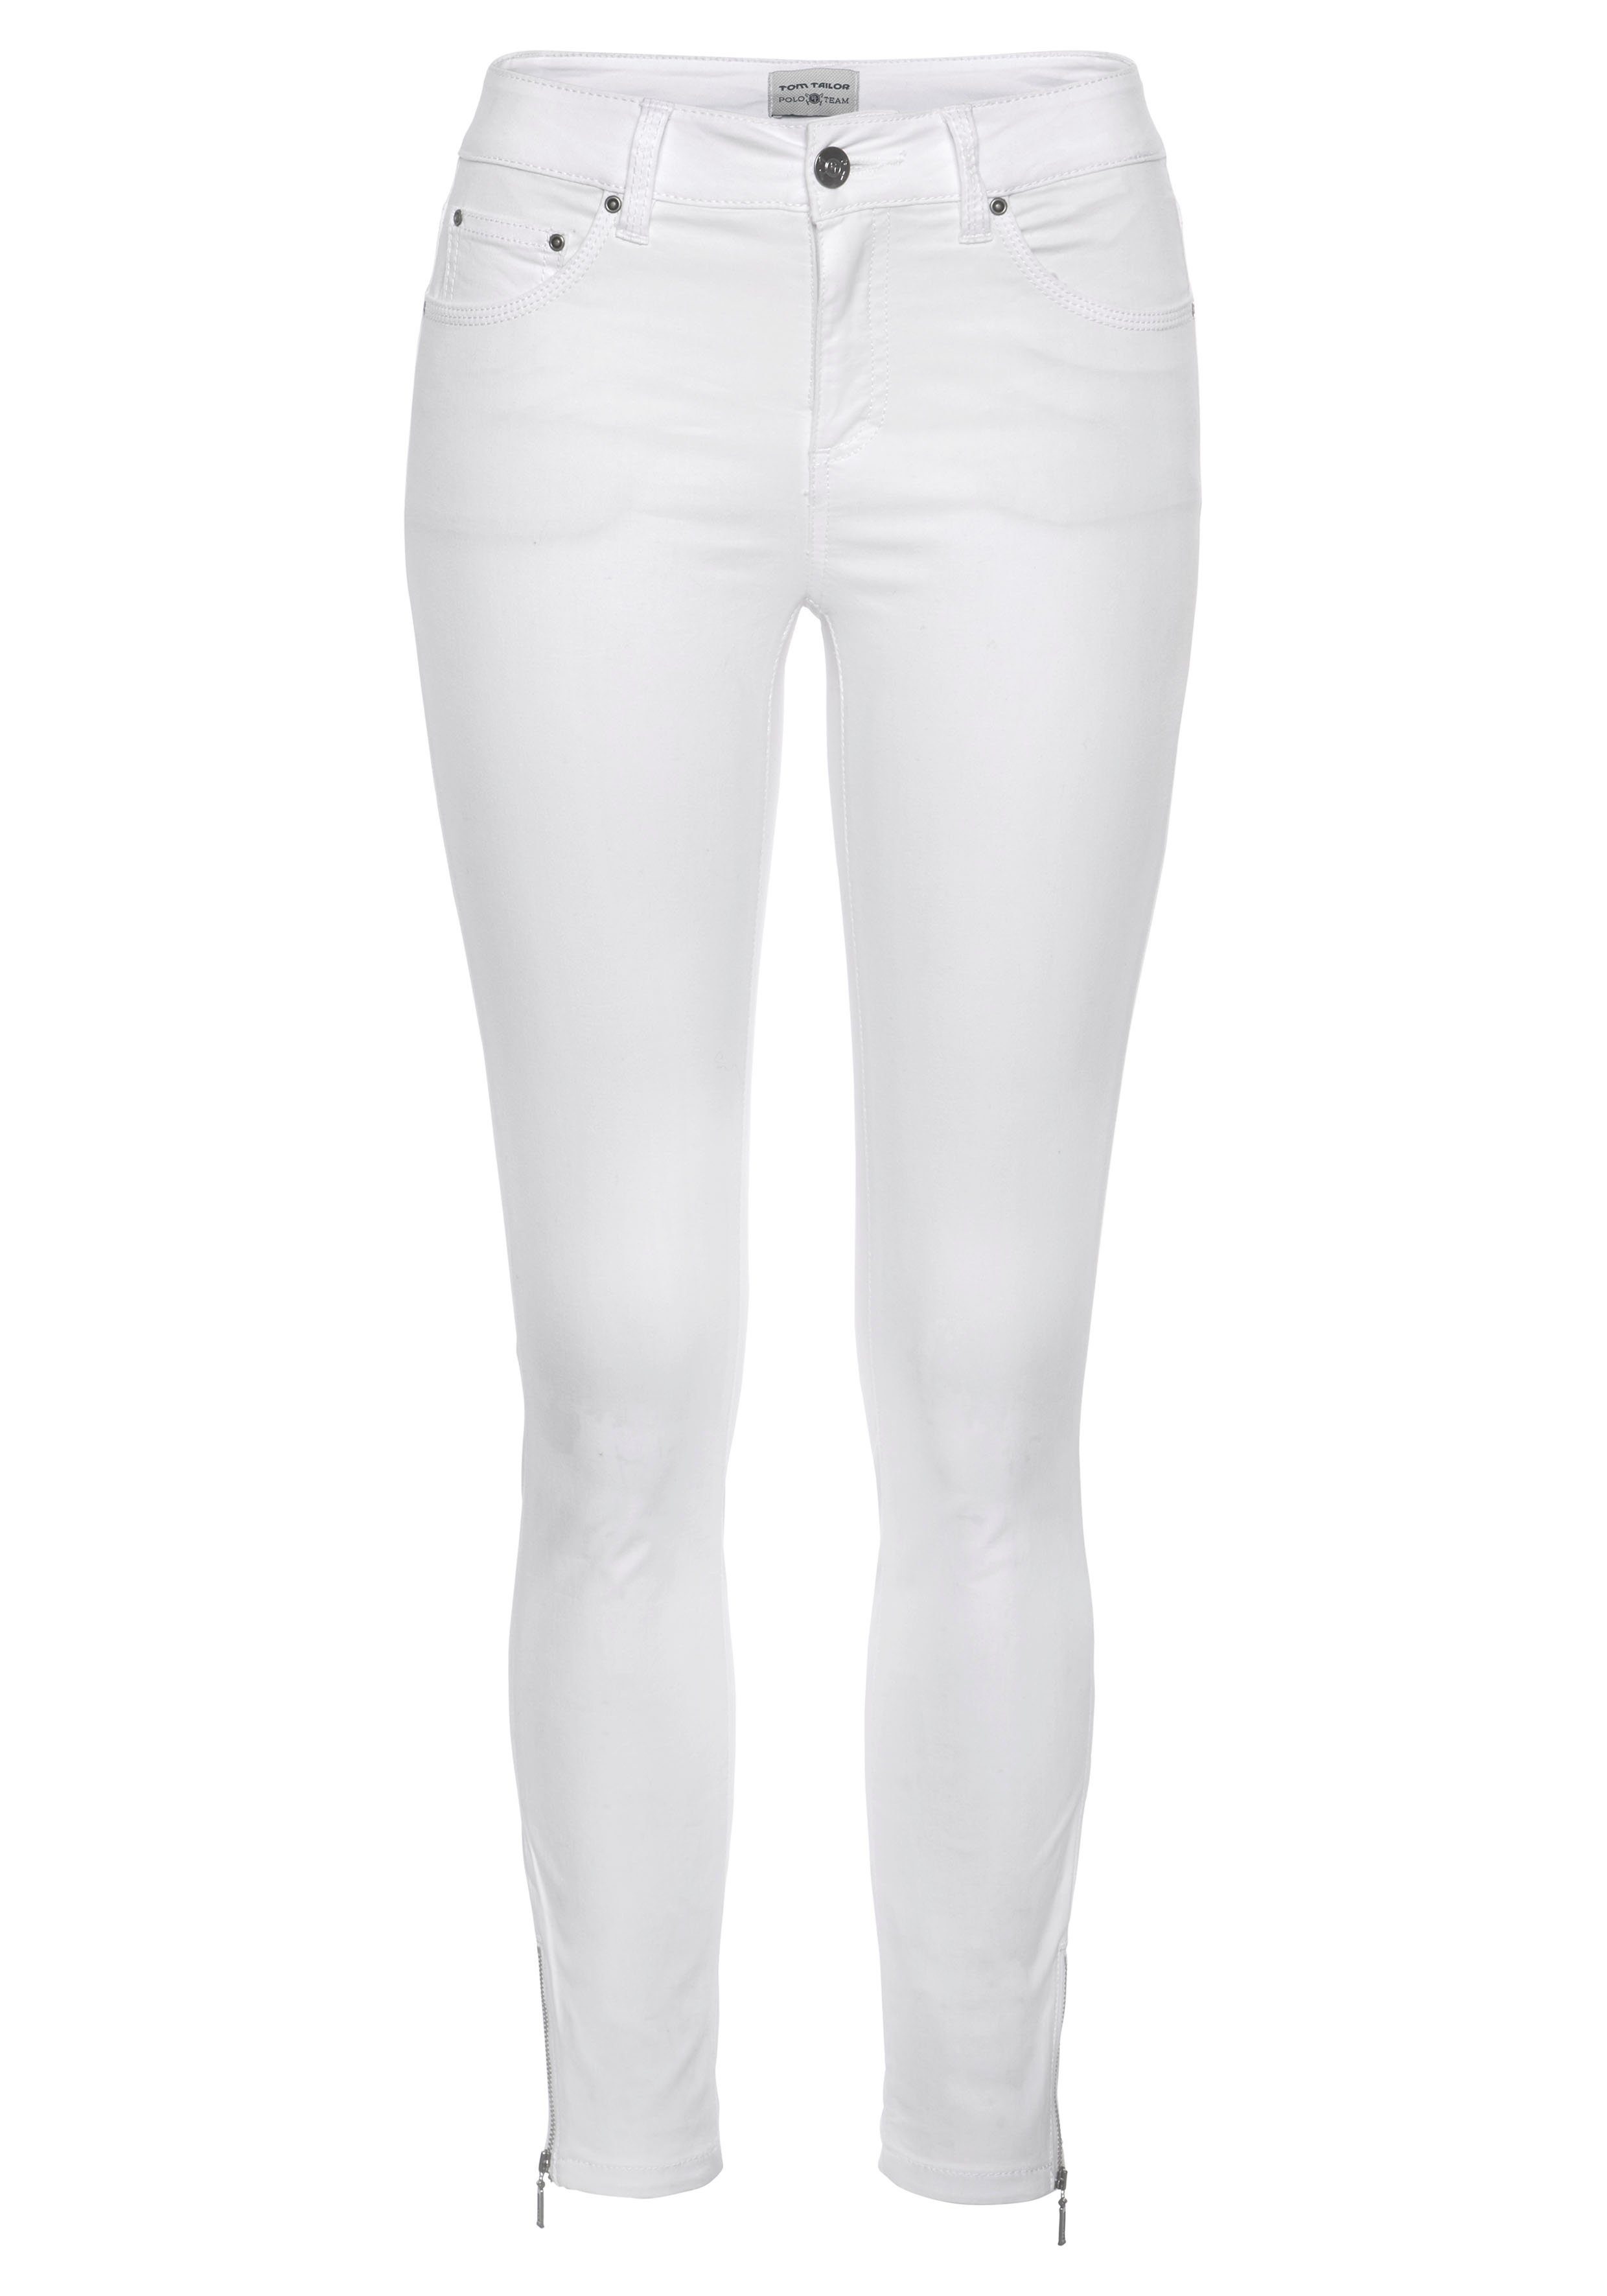 5-Pocket-Stil Slim-fit-Jeans TAILOR im Polo weiß TOM Team